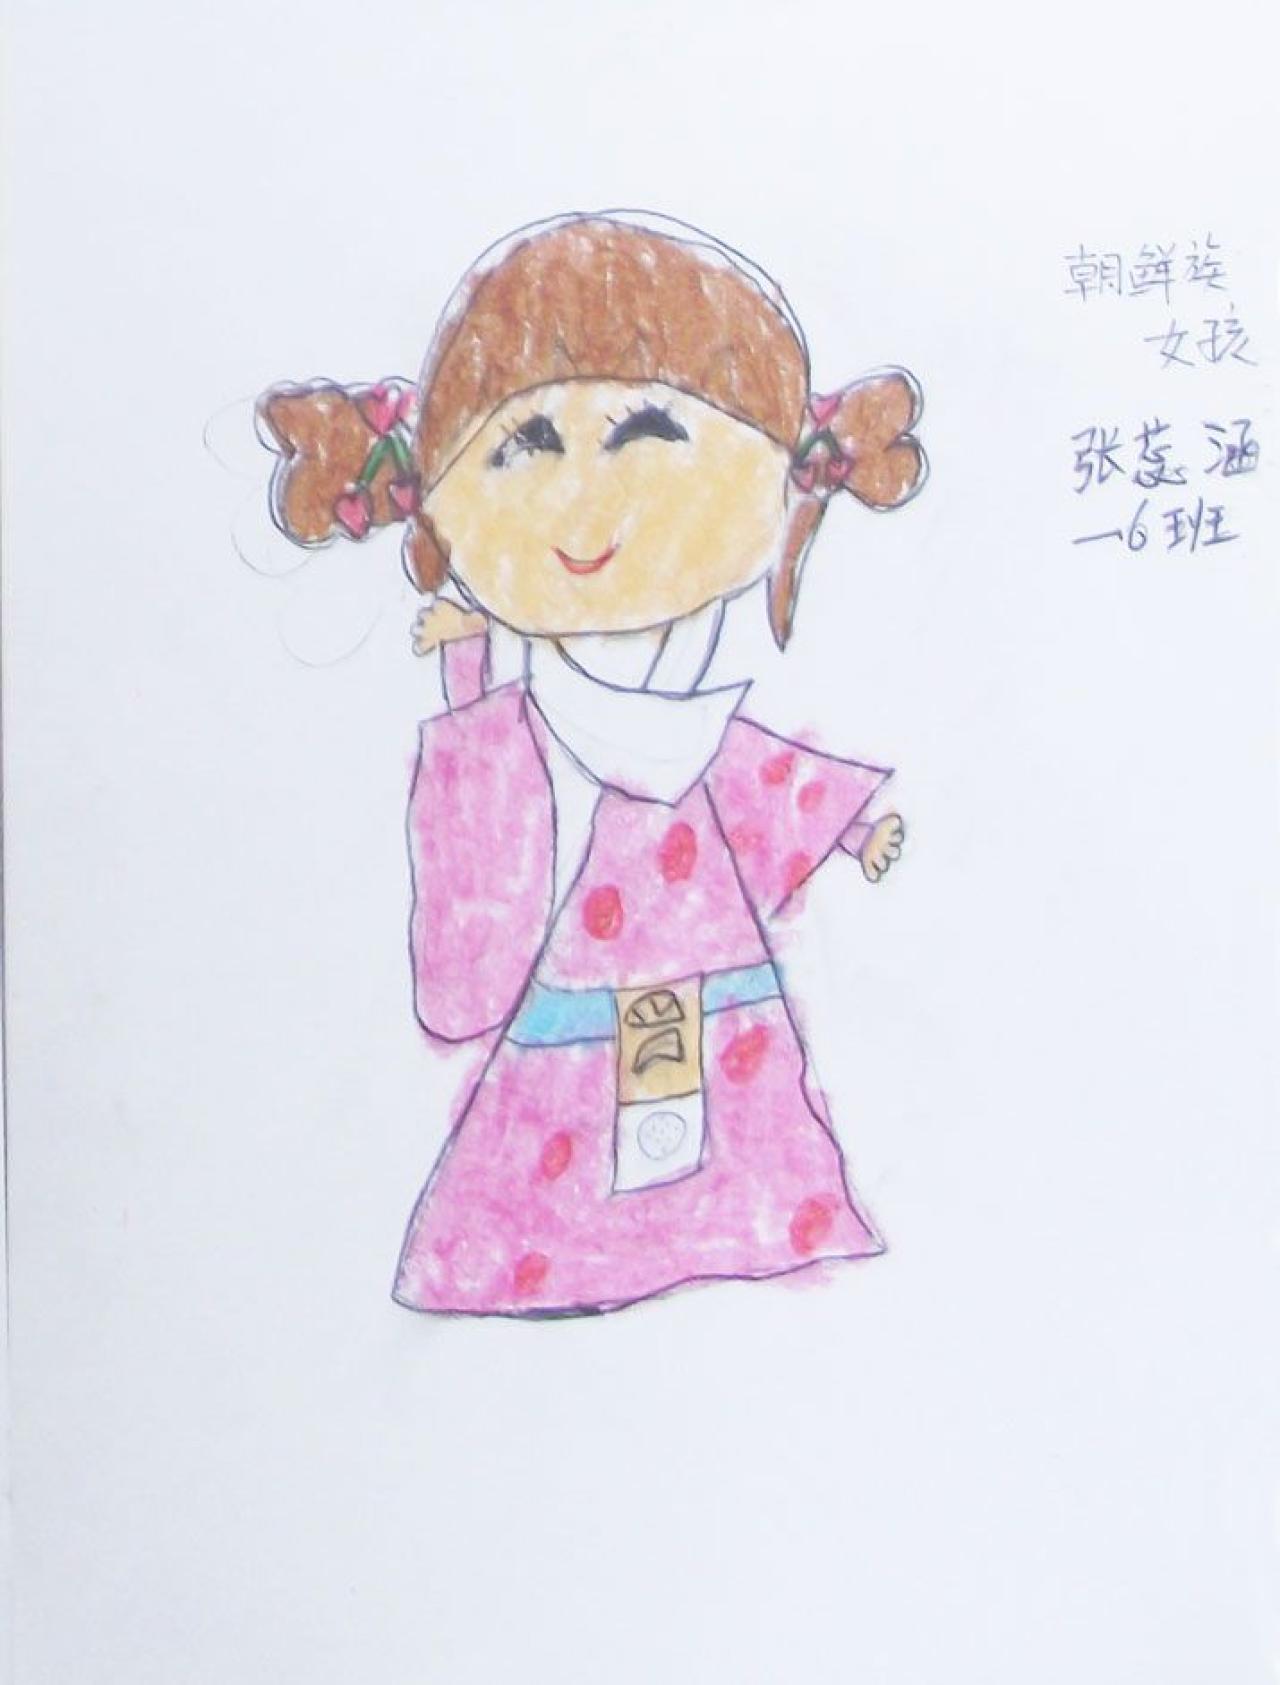 朝鲜族女孩 张蕊涵画